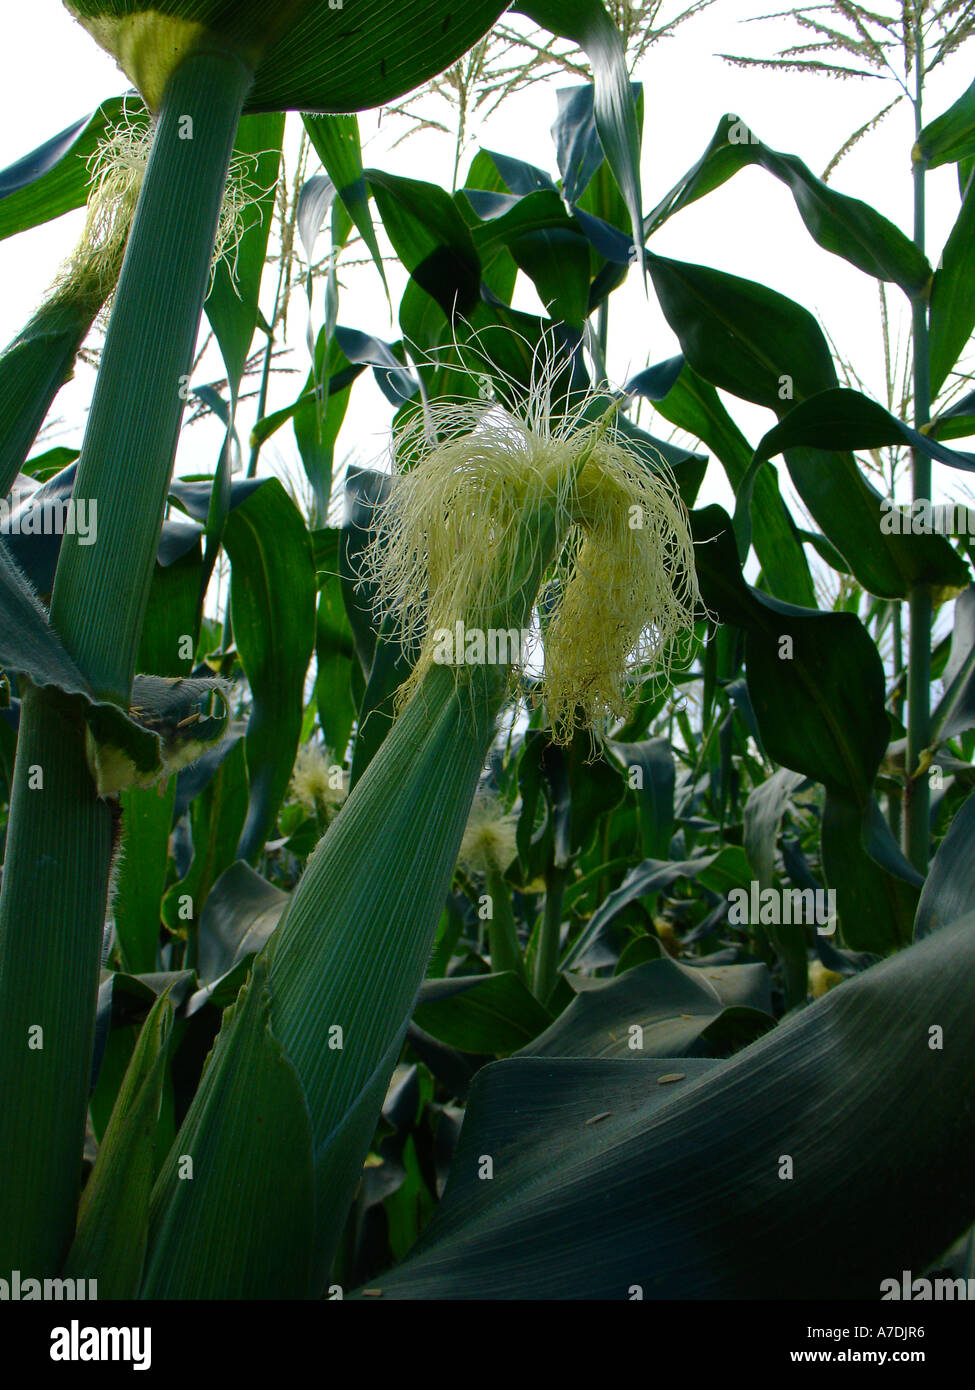 Verde del campo productivo de exuberantes plantas de maíz (el maíz) con orejas de seda y en la región de Copperbelt Zamia, África austral Foto de stock